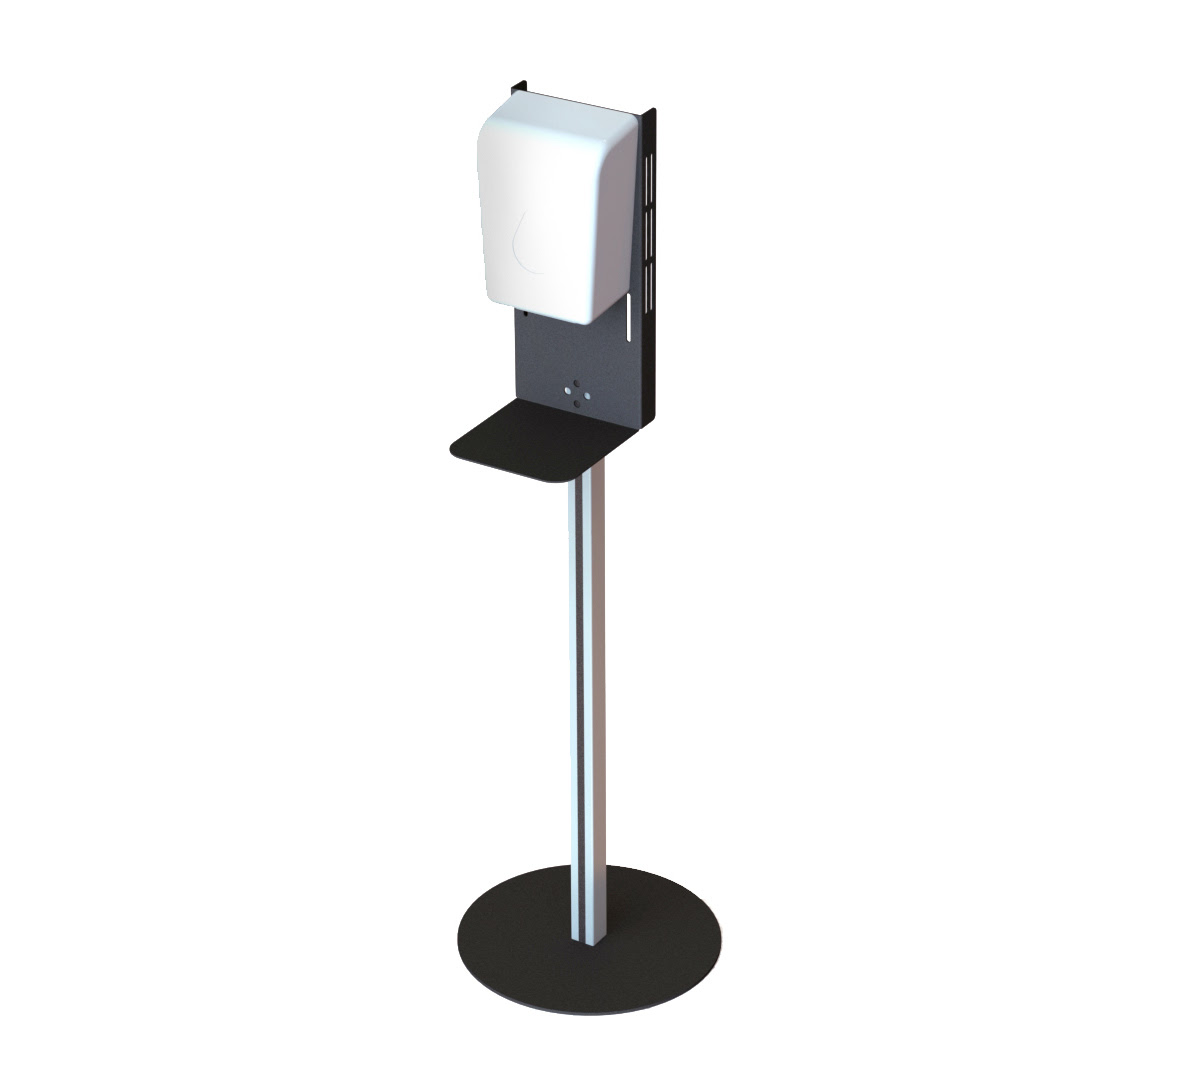 Freestanding Podium for Sanitiser Dispenser